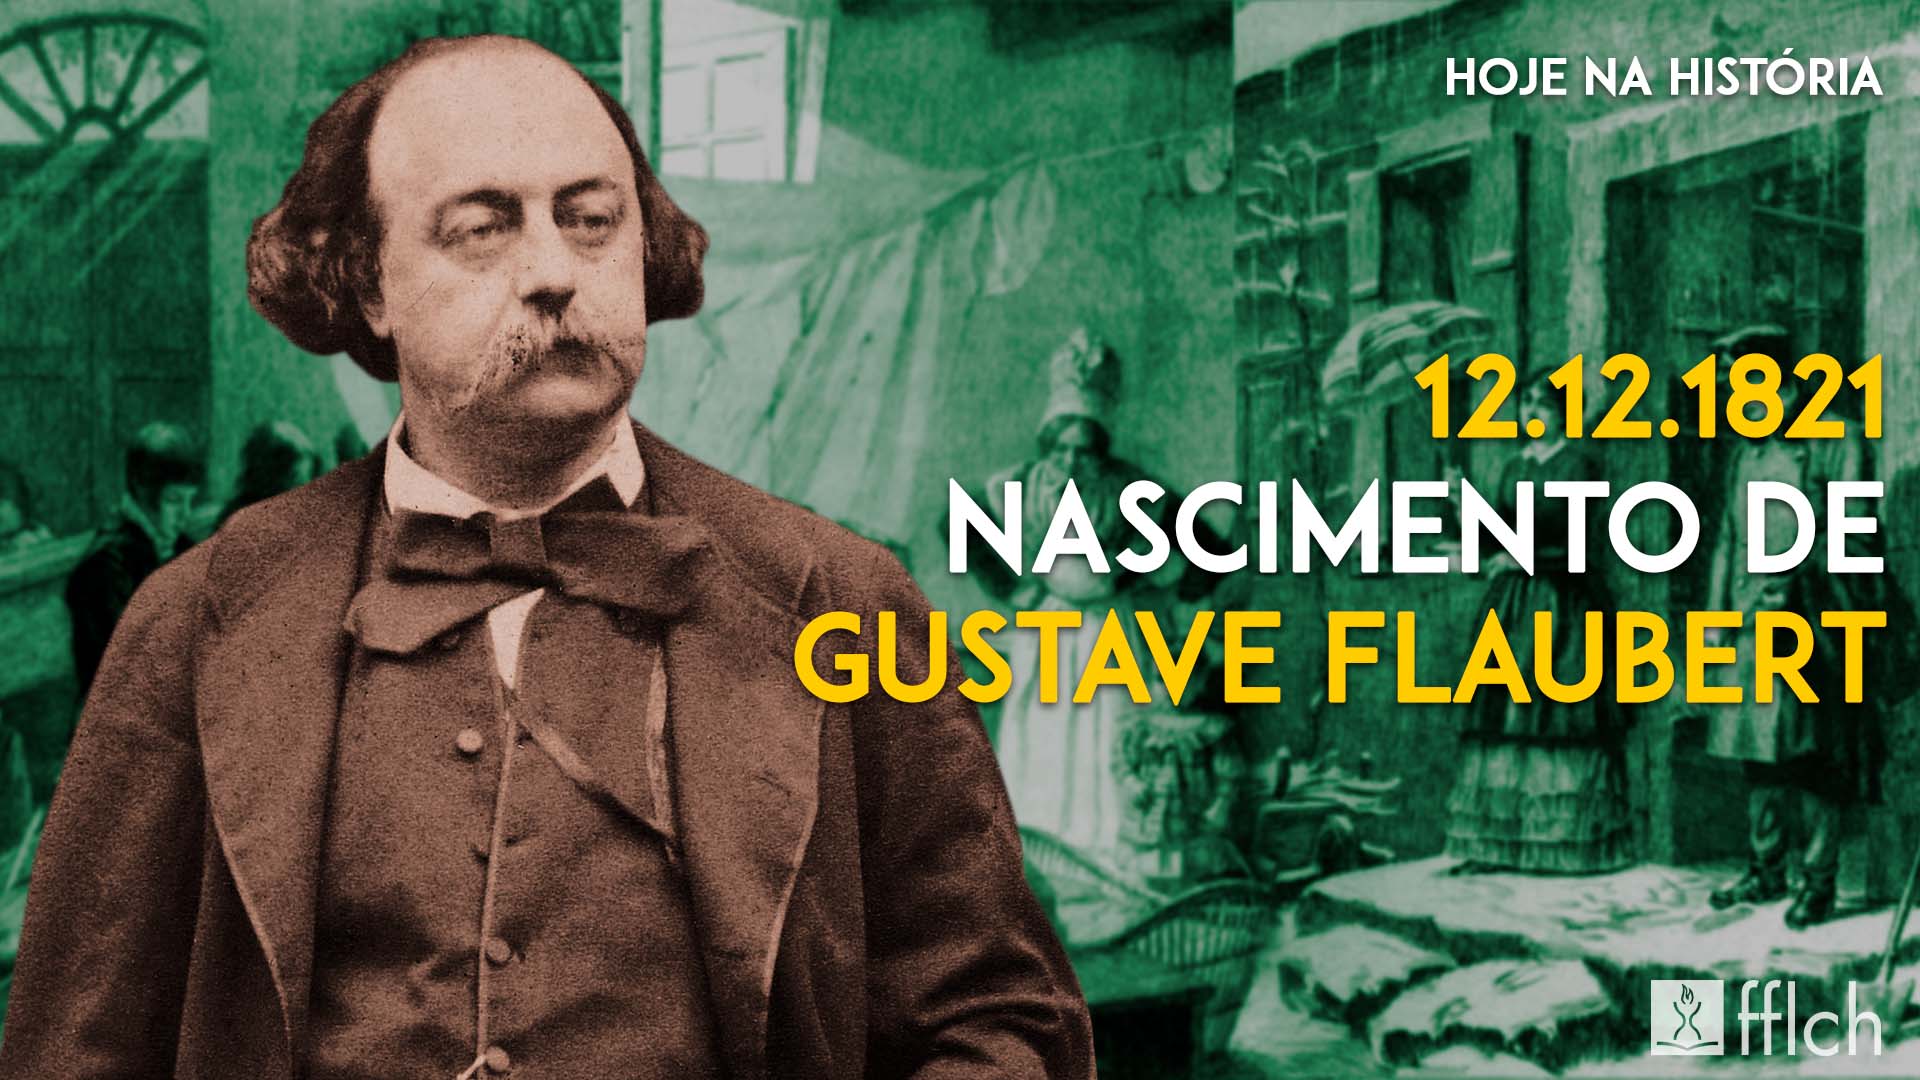 “Gustave Flaubert foi um escritor francês do século 19, importante representante da estética realista e do gênero de romance de formação”, afirma o pesquisador Fillipe Augusto Galeti Mauro